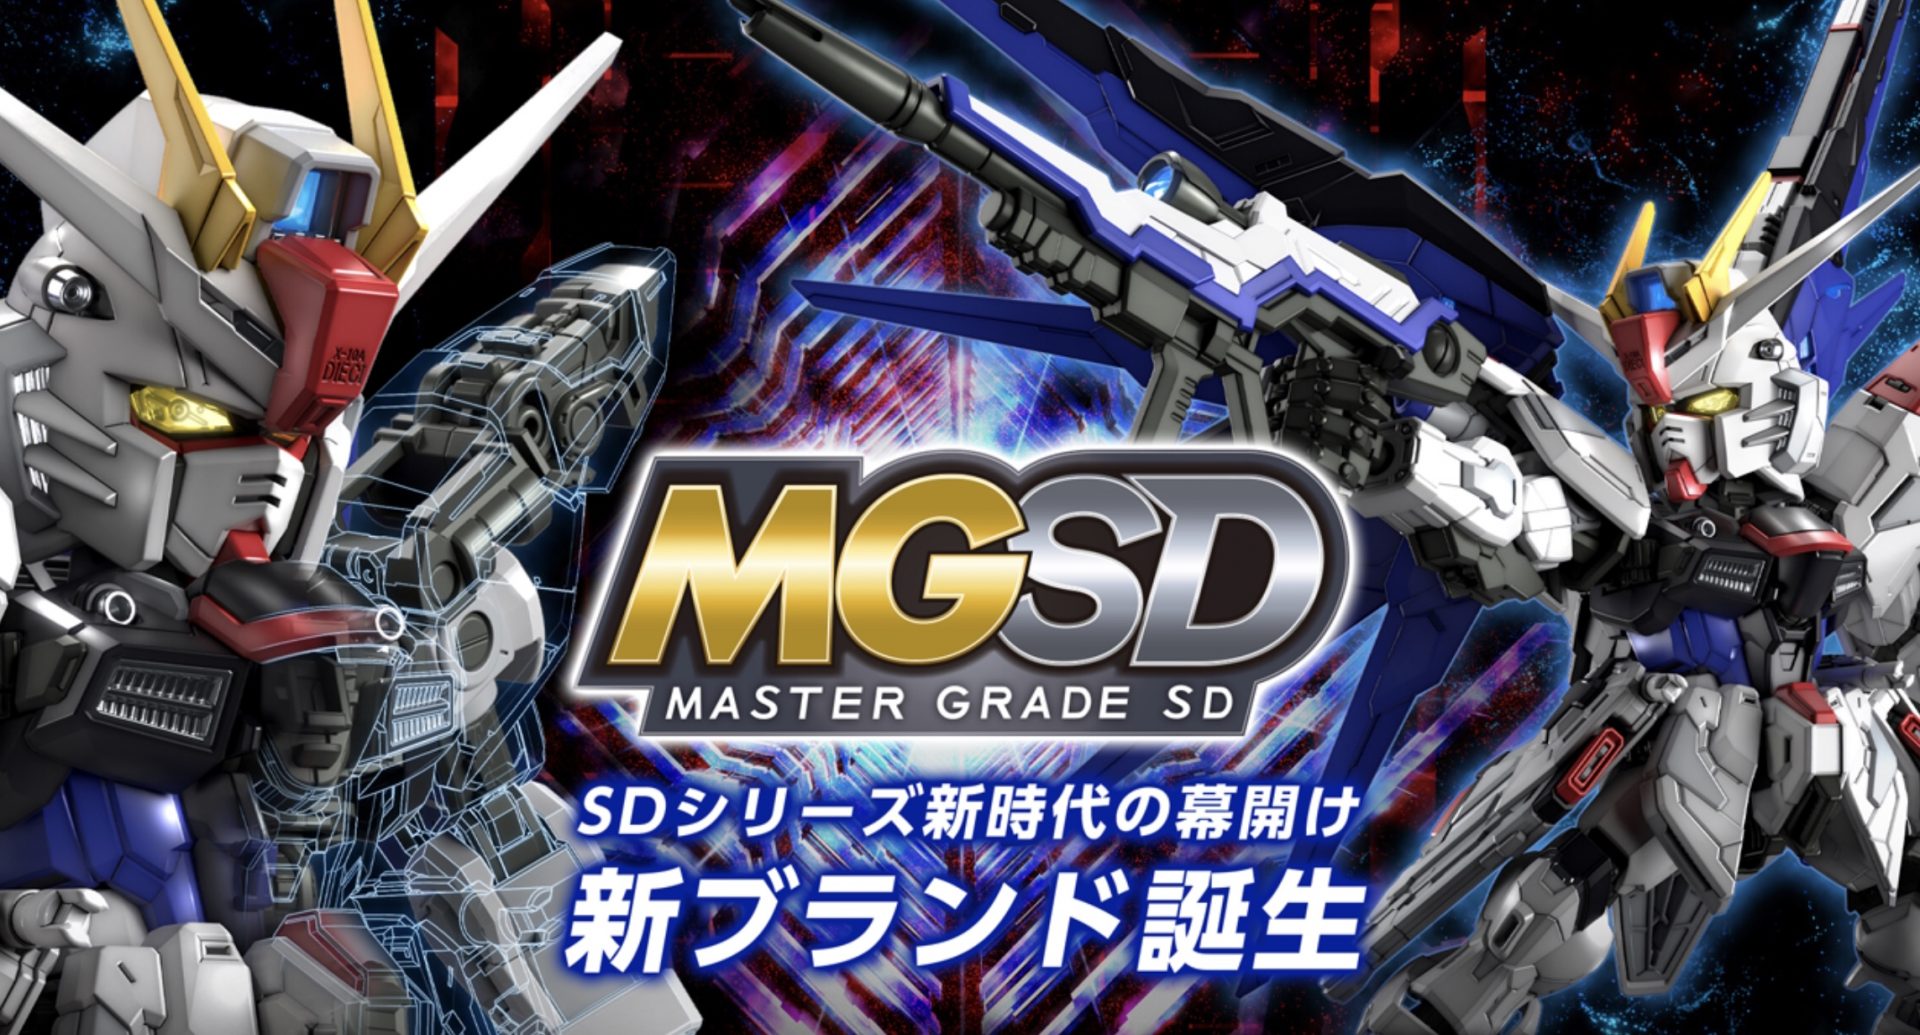 สิ้นสุดการรอคอย! เผยโฉม ‘MGSD’ กันพลาไลน์ล่าสุดจาก Bandai ประกาศวันวางจำหน่ายแล้ว!